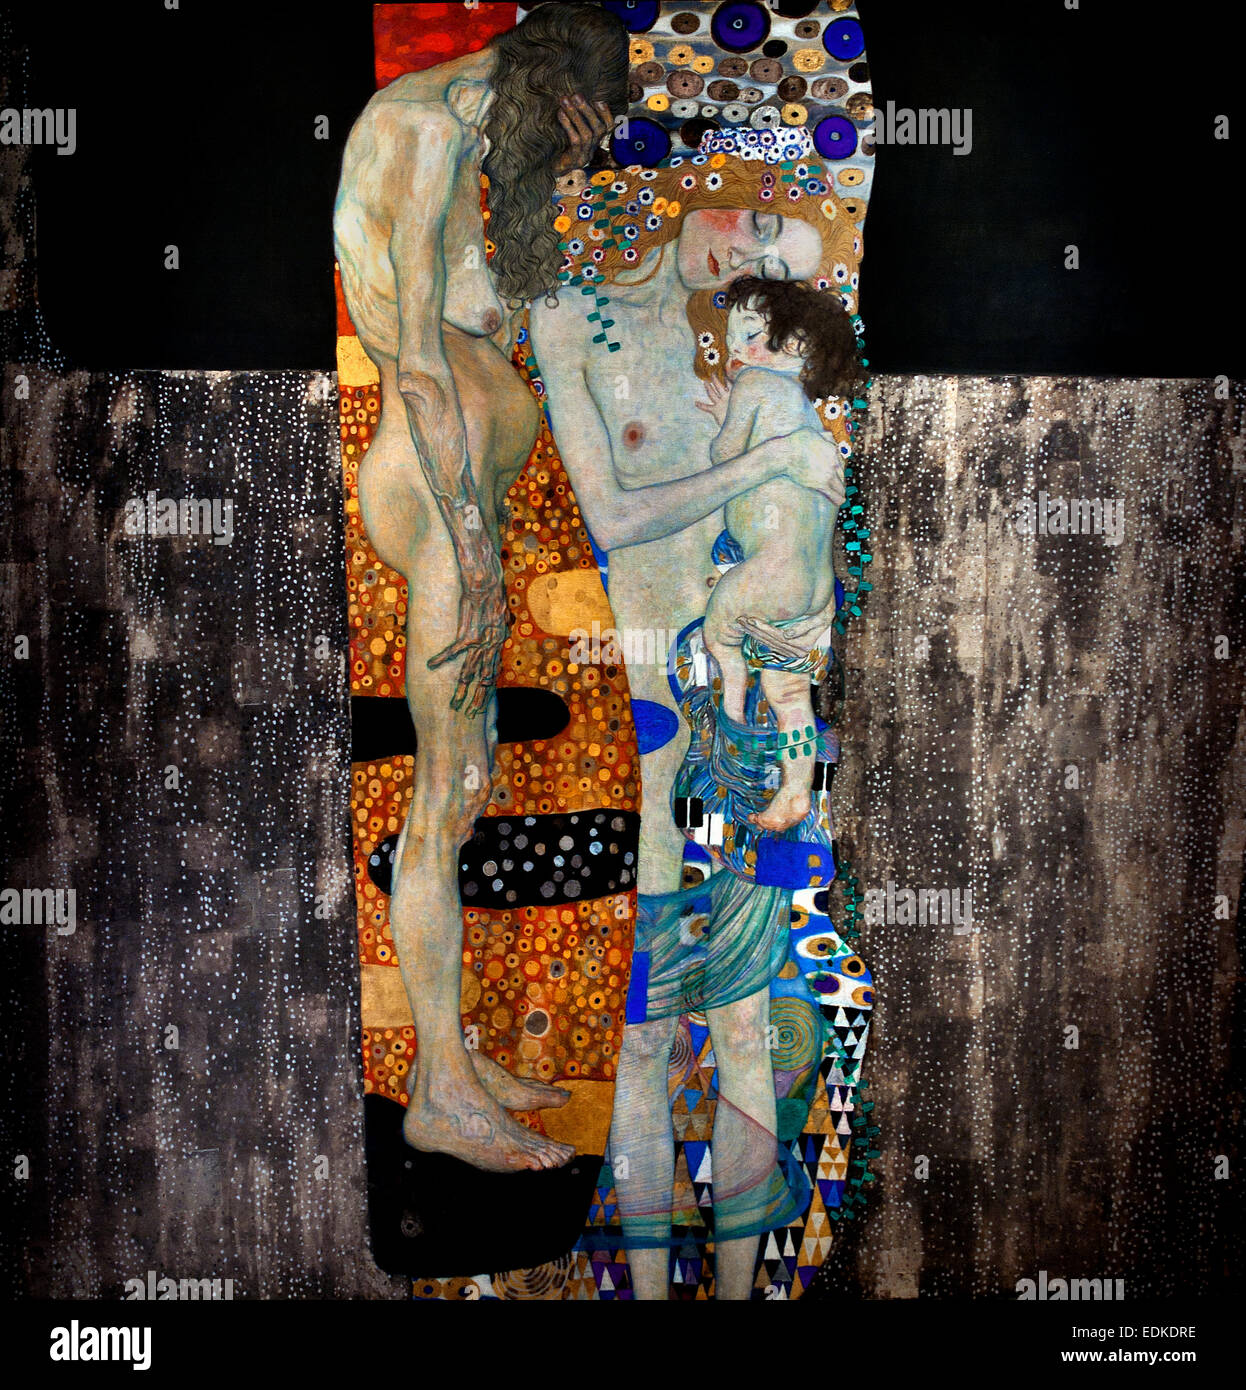 Die drei Lebensalter der Frau - Les trois âges de la Femme 1905 Gustav Klimt 1862 - 1918 peintre symboliste autrichien du mouvement de sécession de Vienne Autriche Banque D'Images